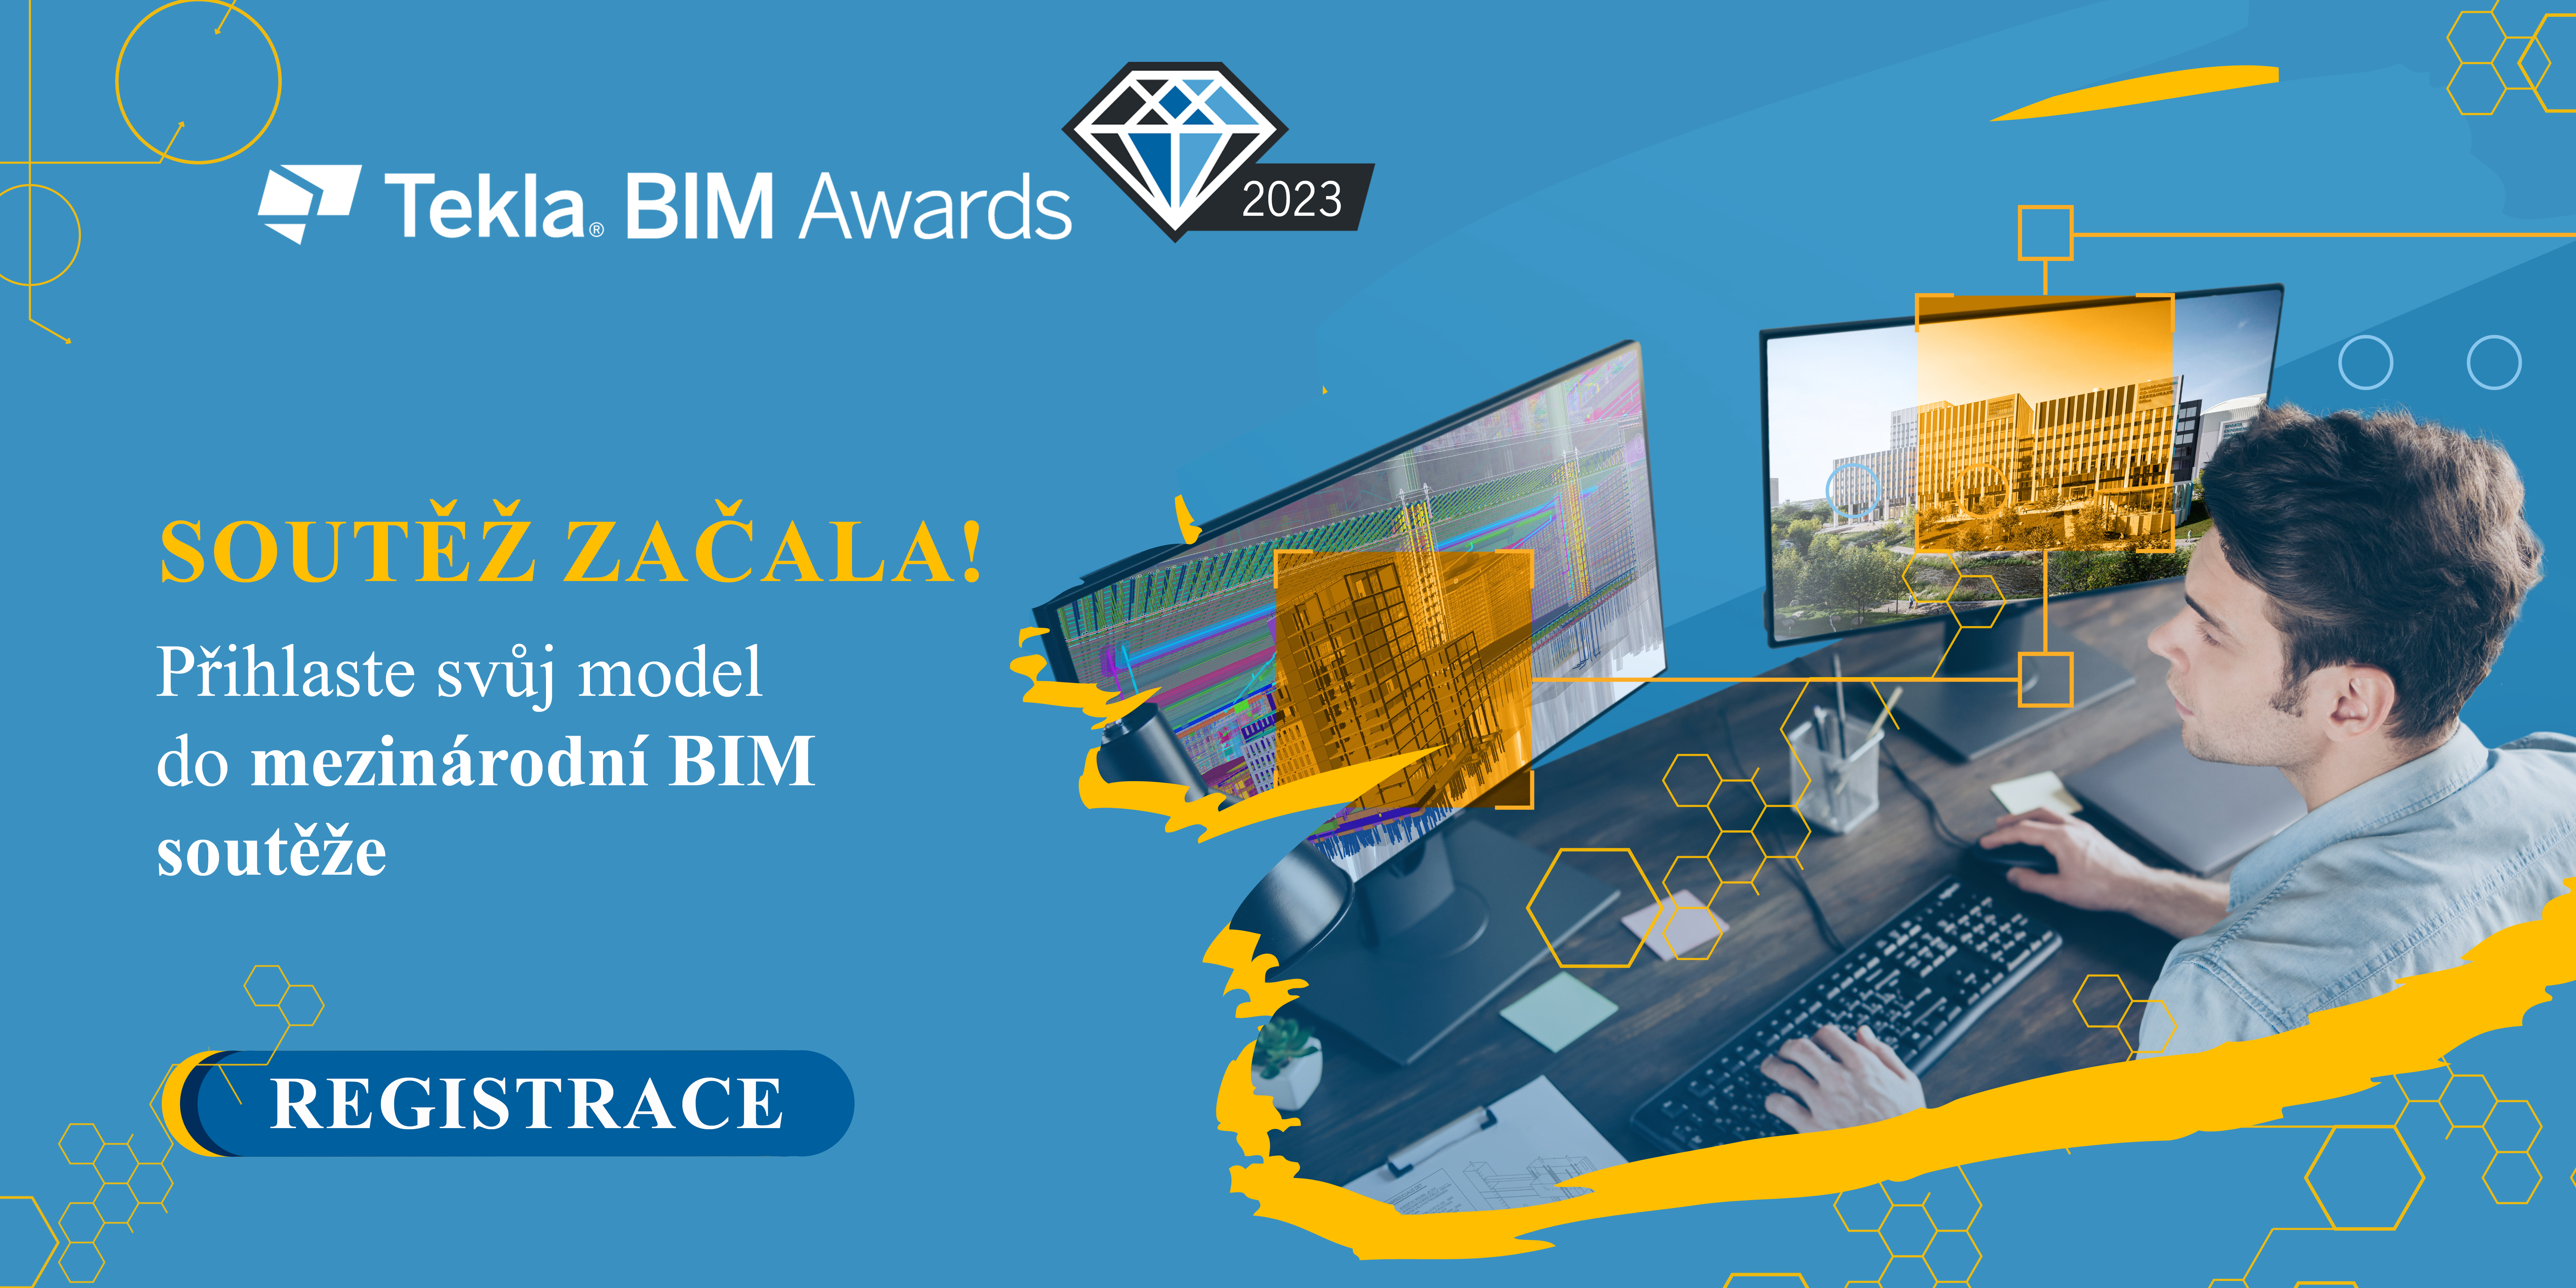 Soutěž Tekla BIM Awards 2023 byla zahájena!